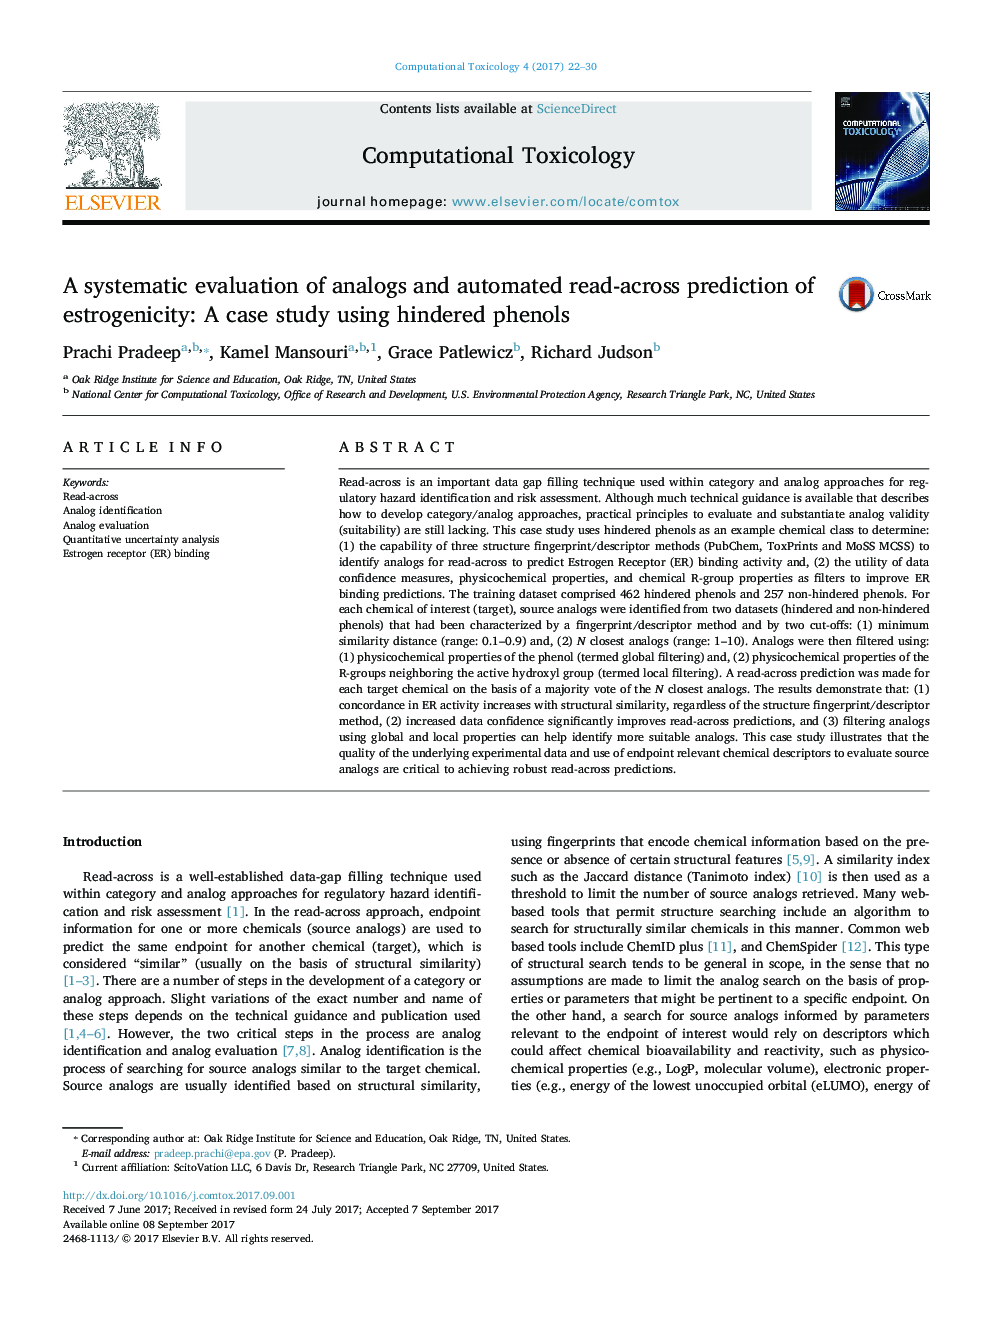 ارزیابی سیستماتیک از آنالوگ ها و پیش بینی استروژنیکی خودکار خواندن همزمان: مطالعه موردی با استفاده از فنل های مهار شده 